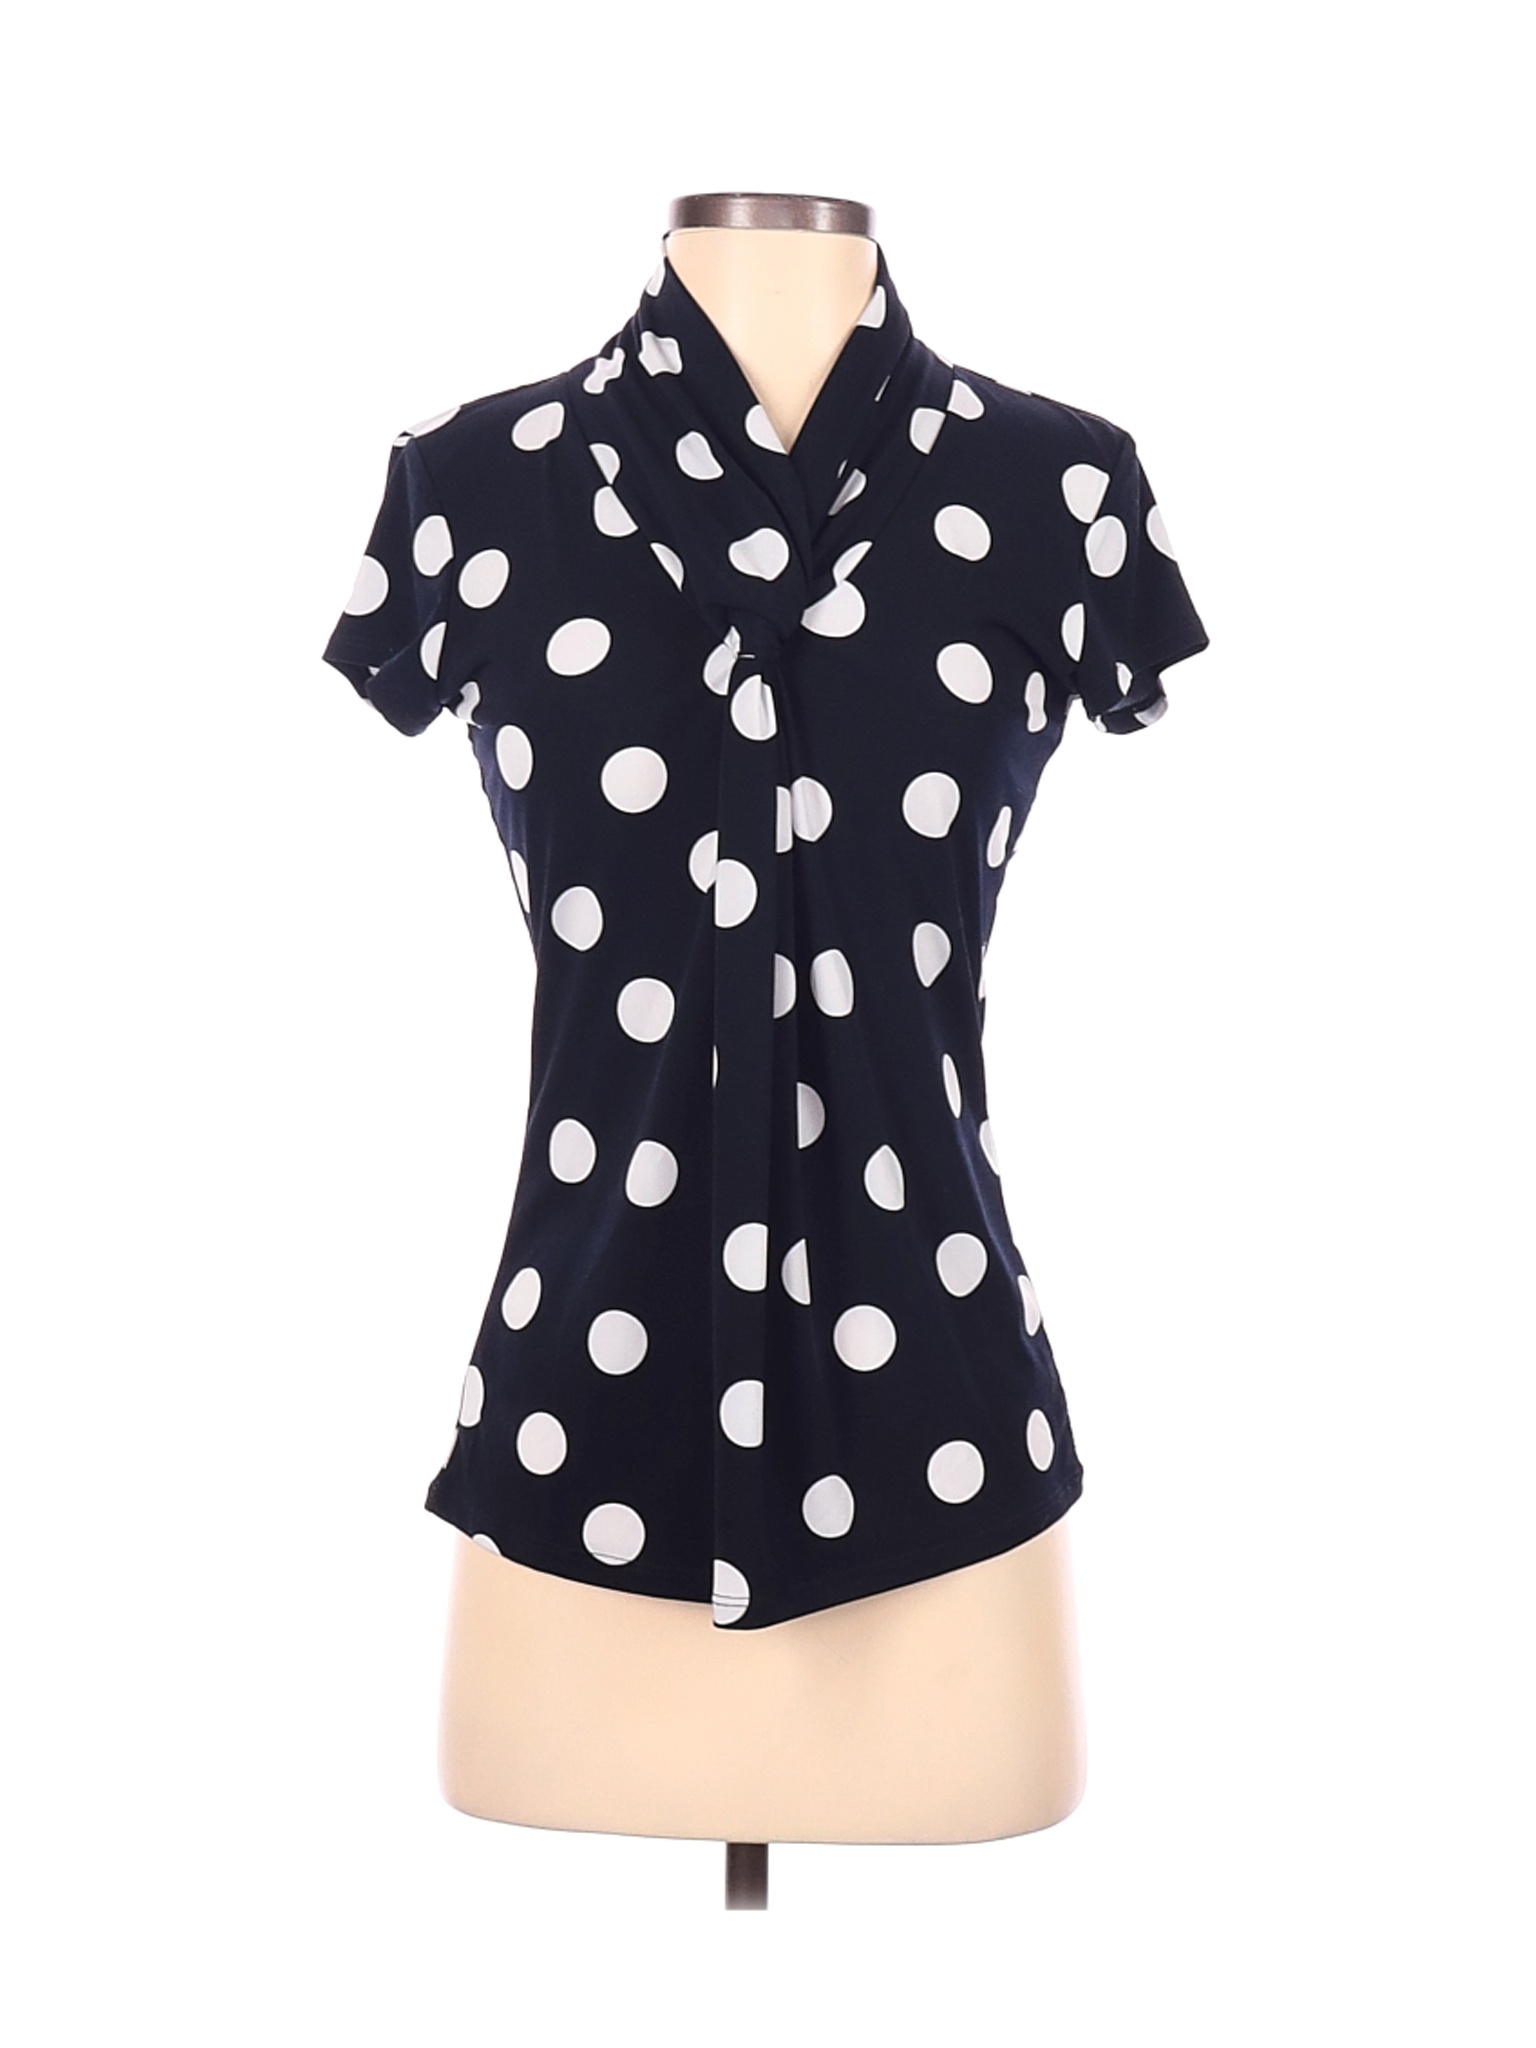 Grace Women Black Short Sleeve Top S | eBay